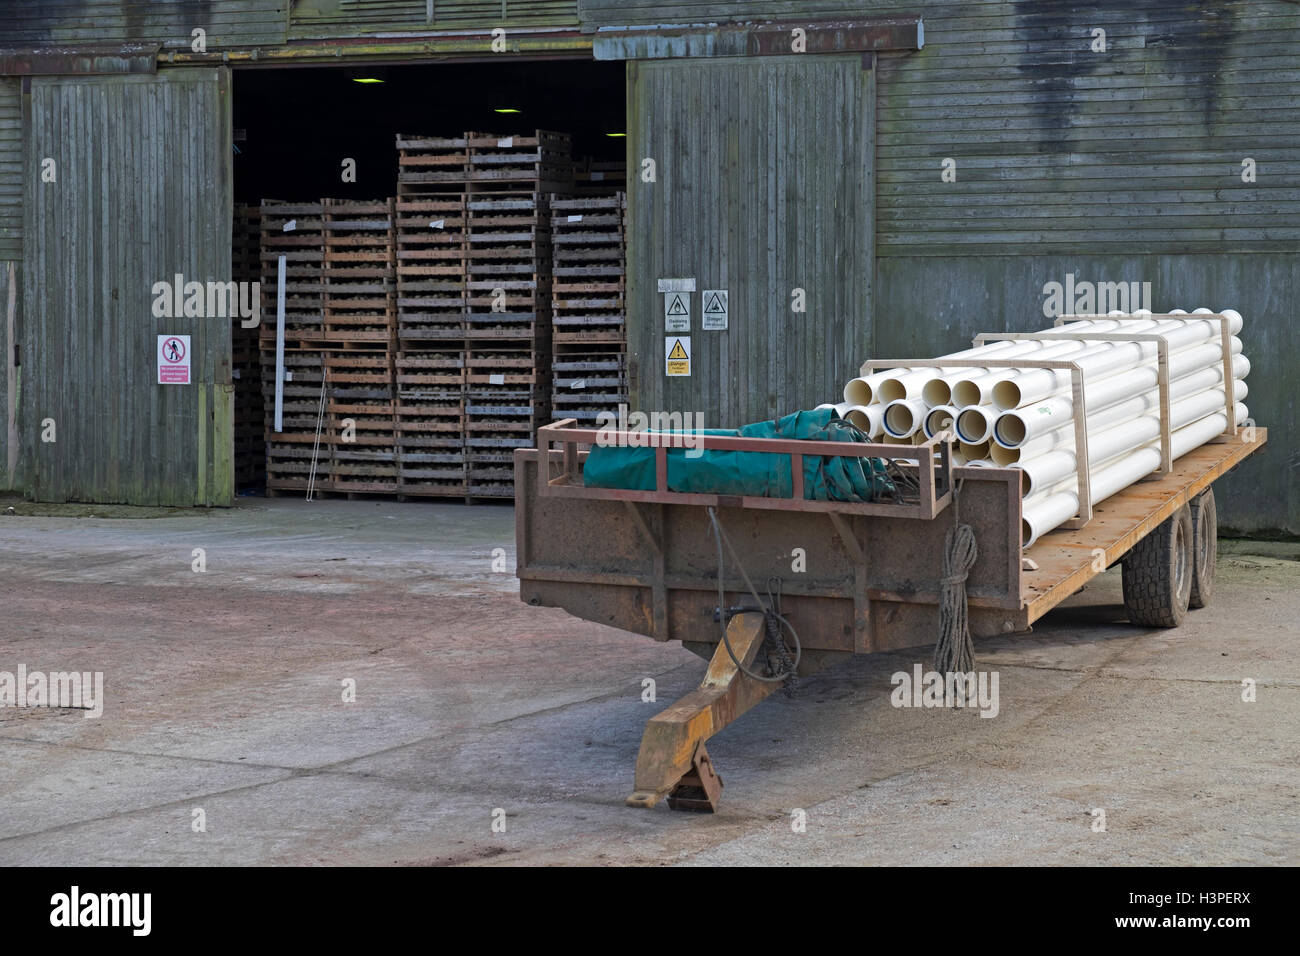 Les plants de pommes de terre en entreposage prêts pour la plantation, Boyton, Suffolk, UK. Banque D'Images